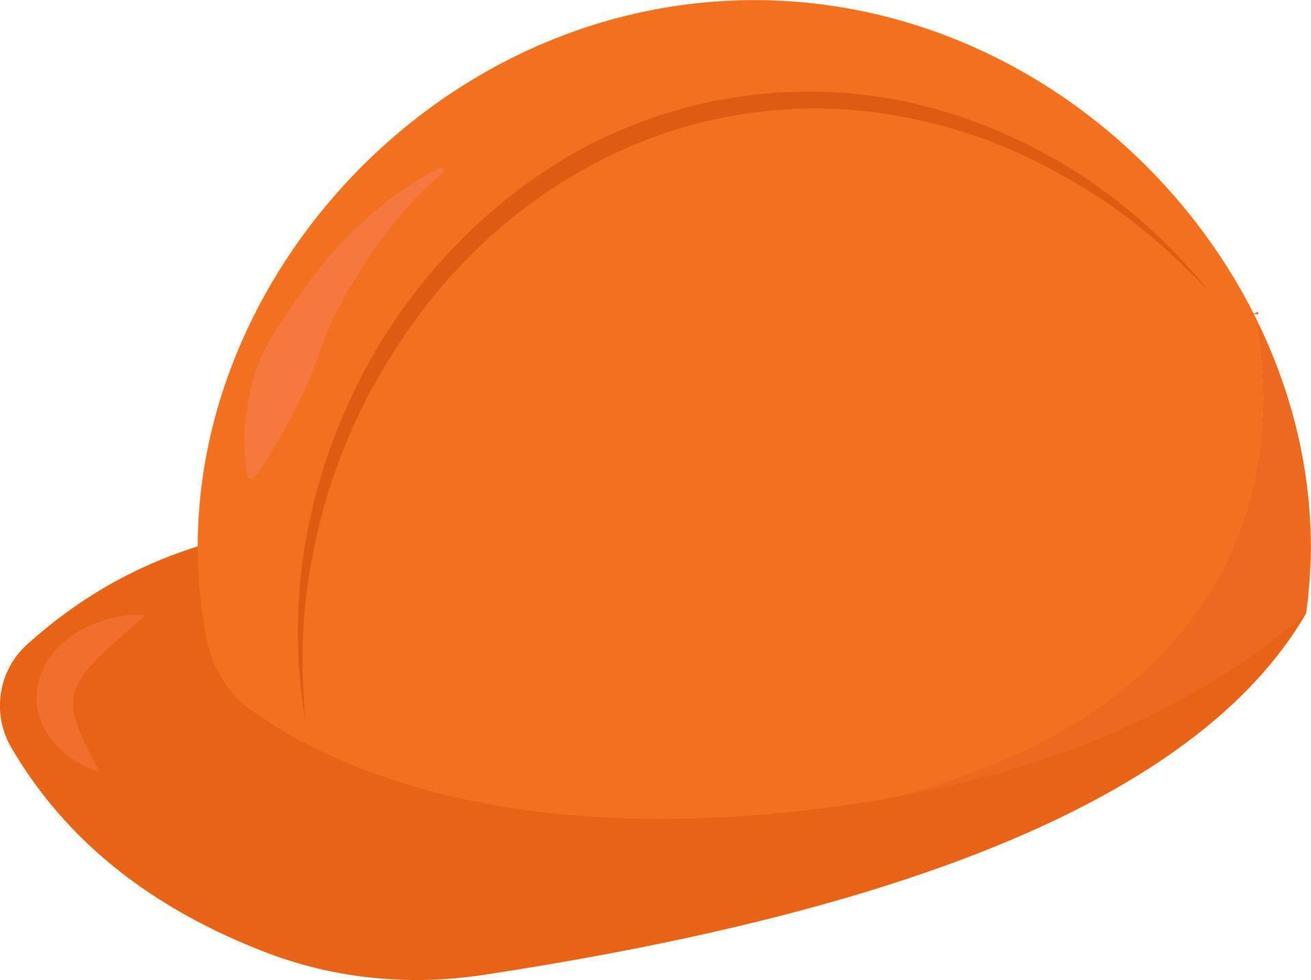 sombrero naranja, ilustración, vector sobre fondo blanco.